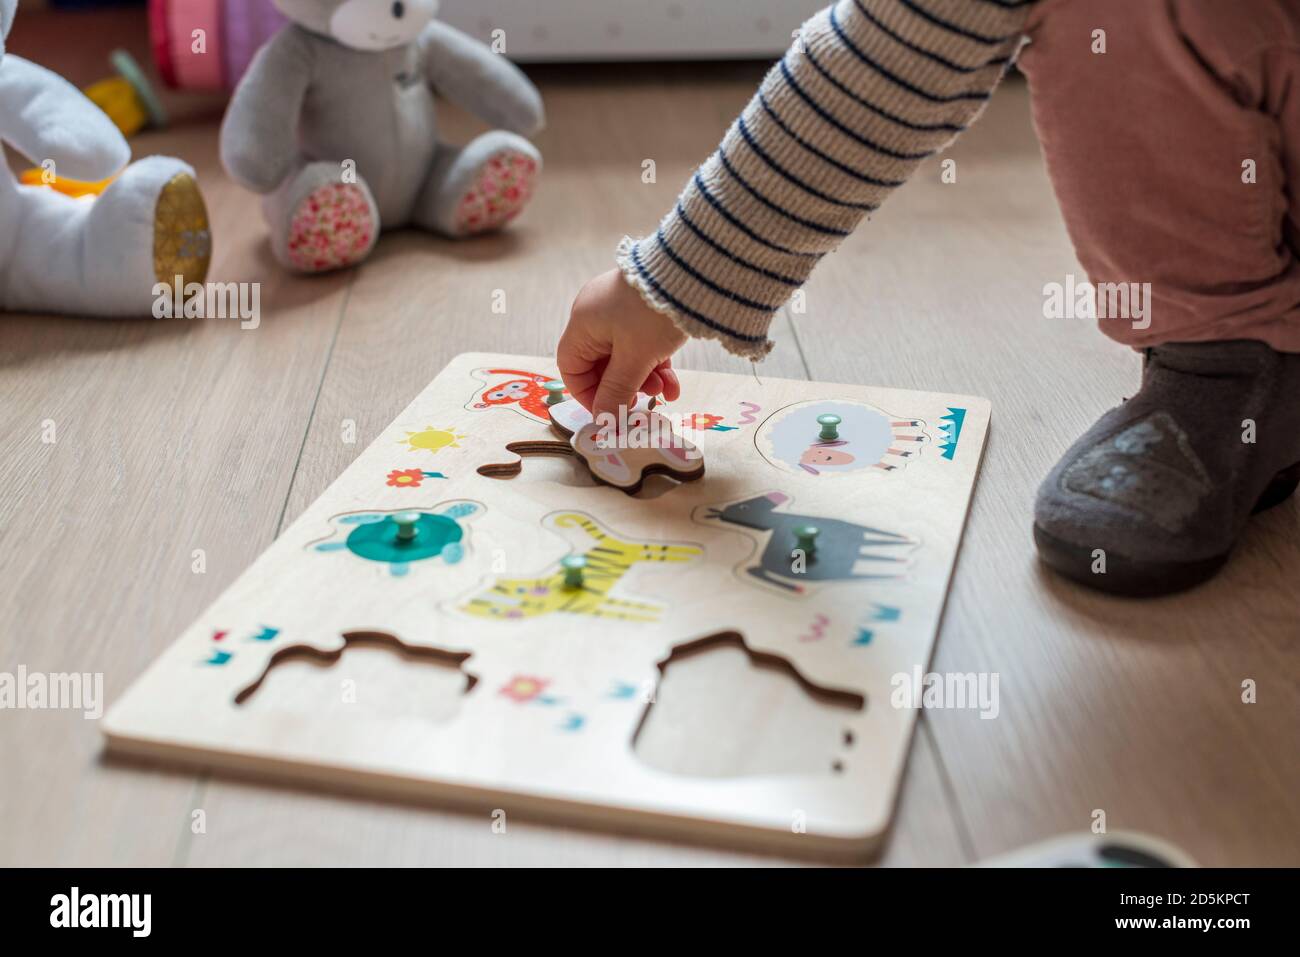 bambino di 17 mesi che gioca con un puzzle di legno, forme adattate di animali Foto Stock